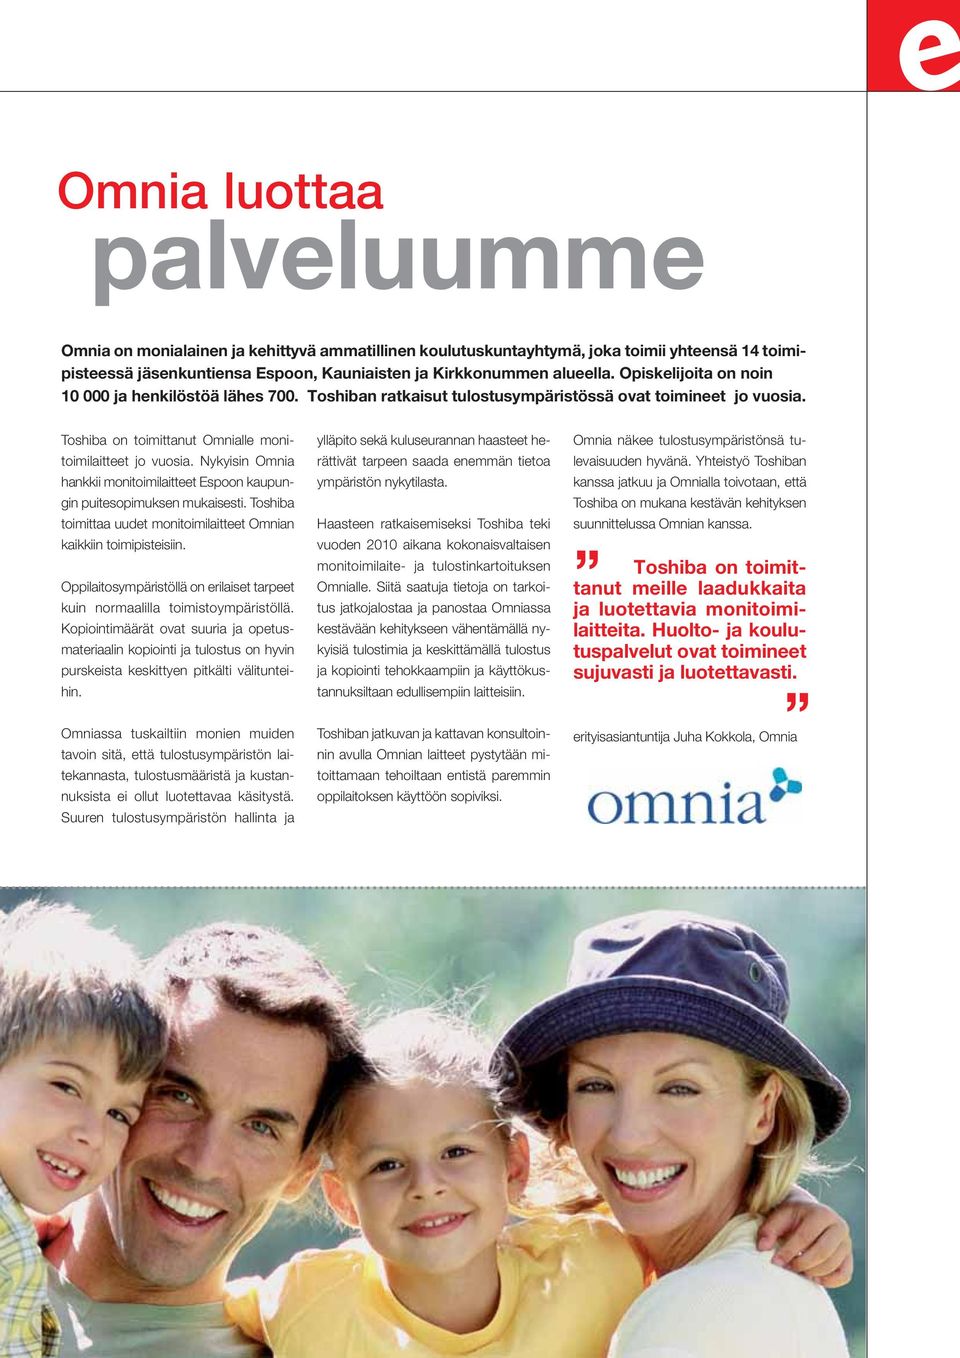 Nykyisin Omnia hankkii monitoimilaitteet Espoon kaupungin puitesopimuksen mukaisesti. Toshiba toimittaa uudet monitoimilaitteet Omnian kaikkiin toimipisteisiin.